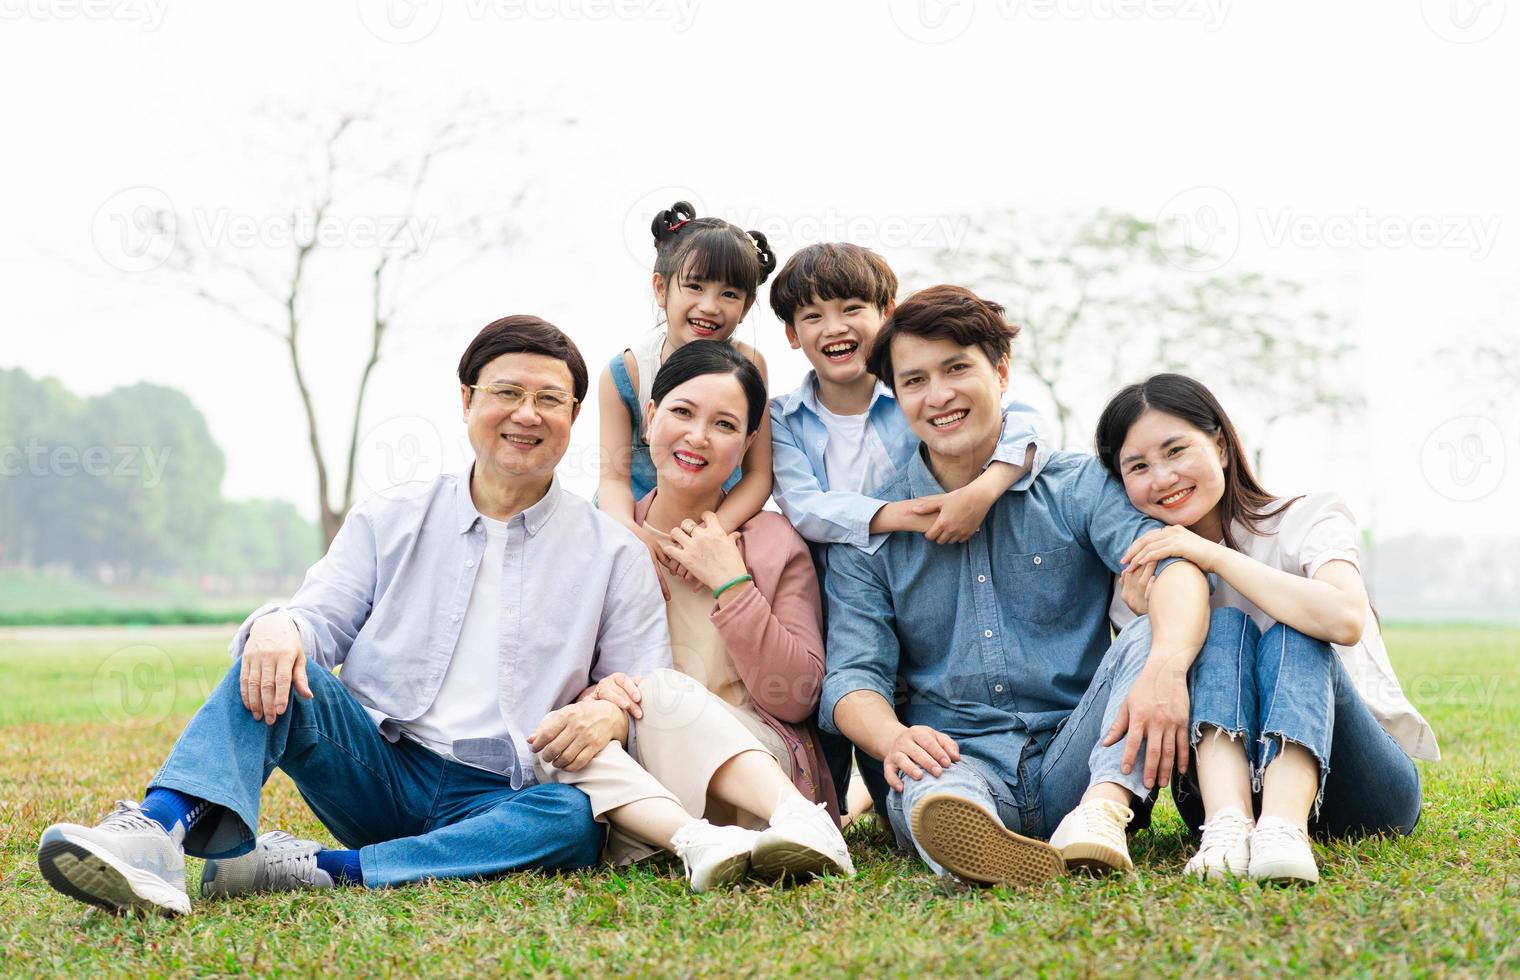 image de un asiatique famille séance ensemble sur le herbe à le parc photo